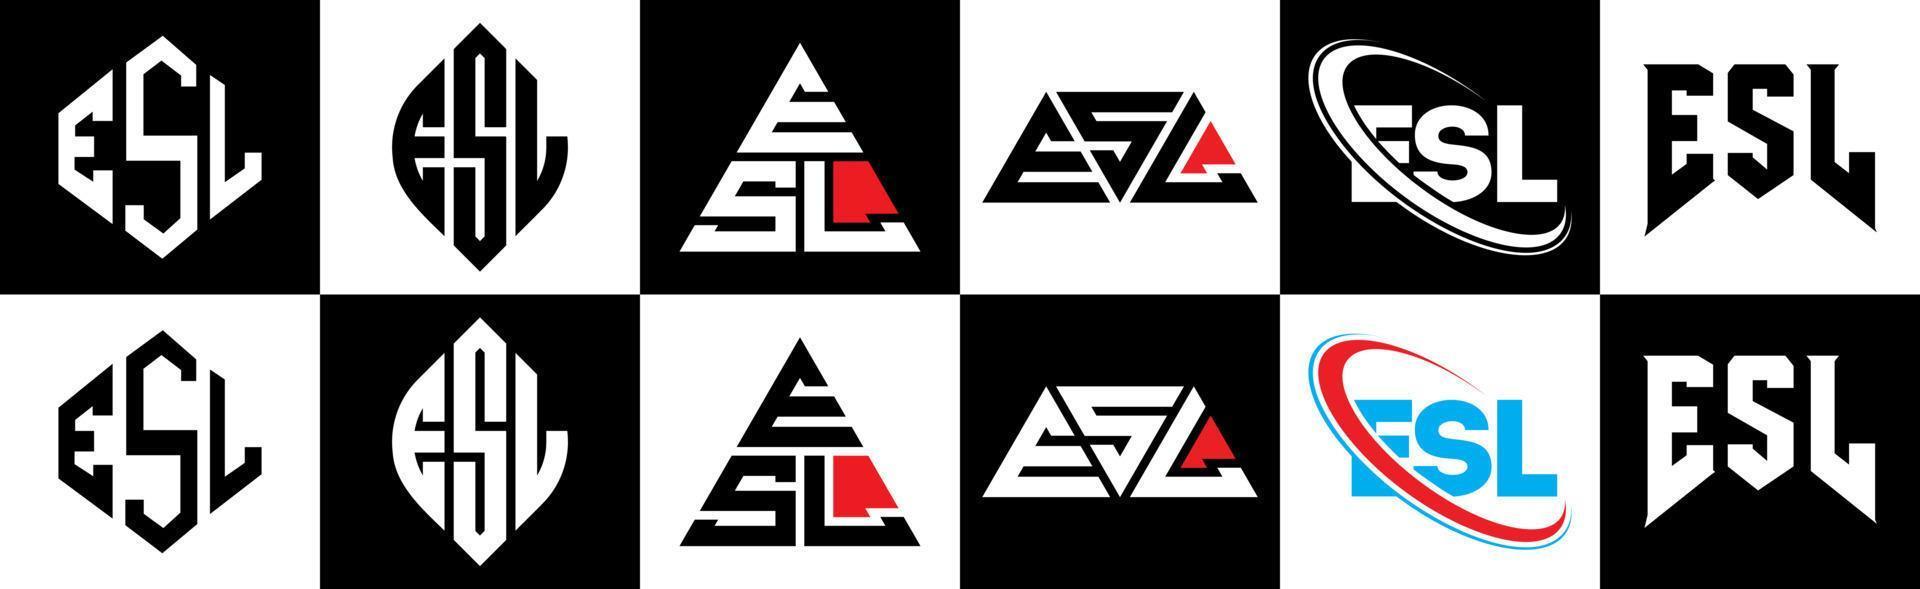 esl-Buchstaben-Logo-Design in sechs Stilen. esl-polygon, kreis, dreieck, sechseck, flacher und einfacher stil mit schwarz-weißem buchstabenlogo in einer zeichenfläche. esl minimalistisches und klassisches logo vektor